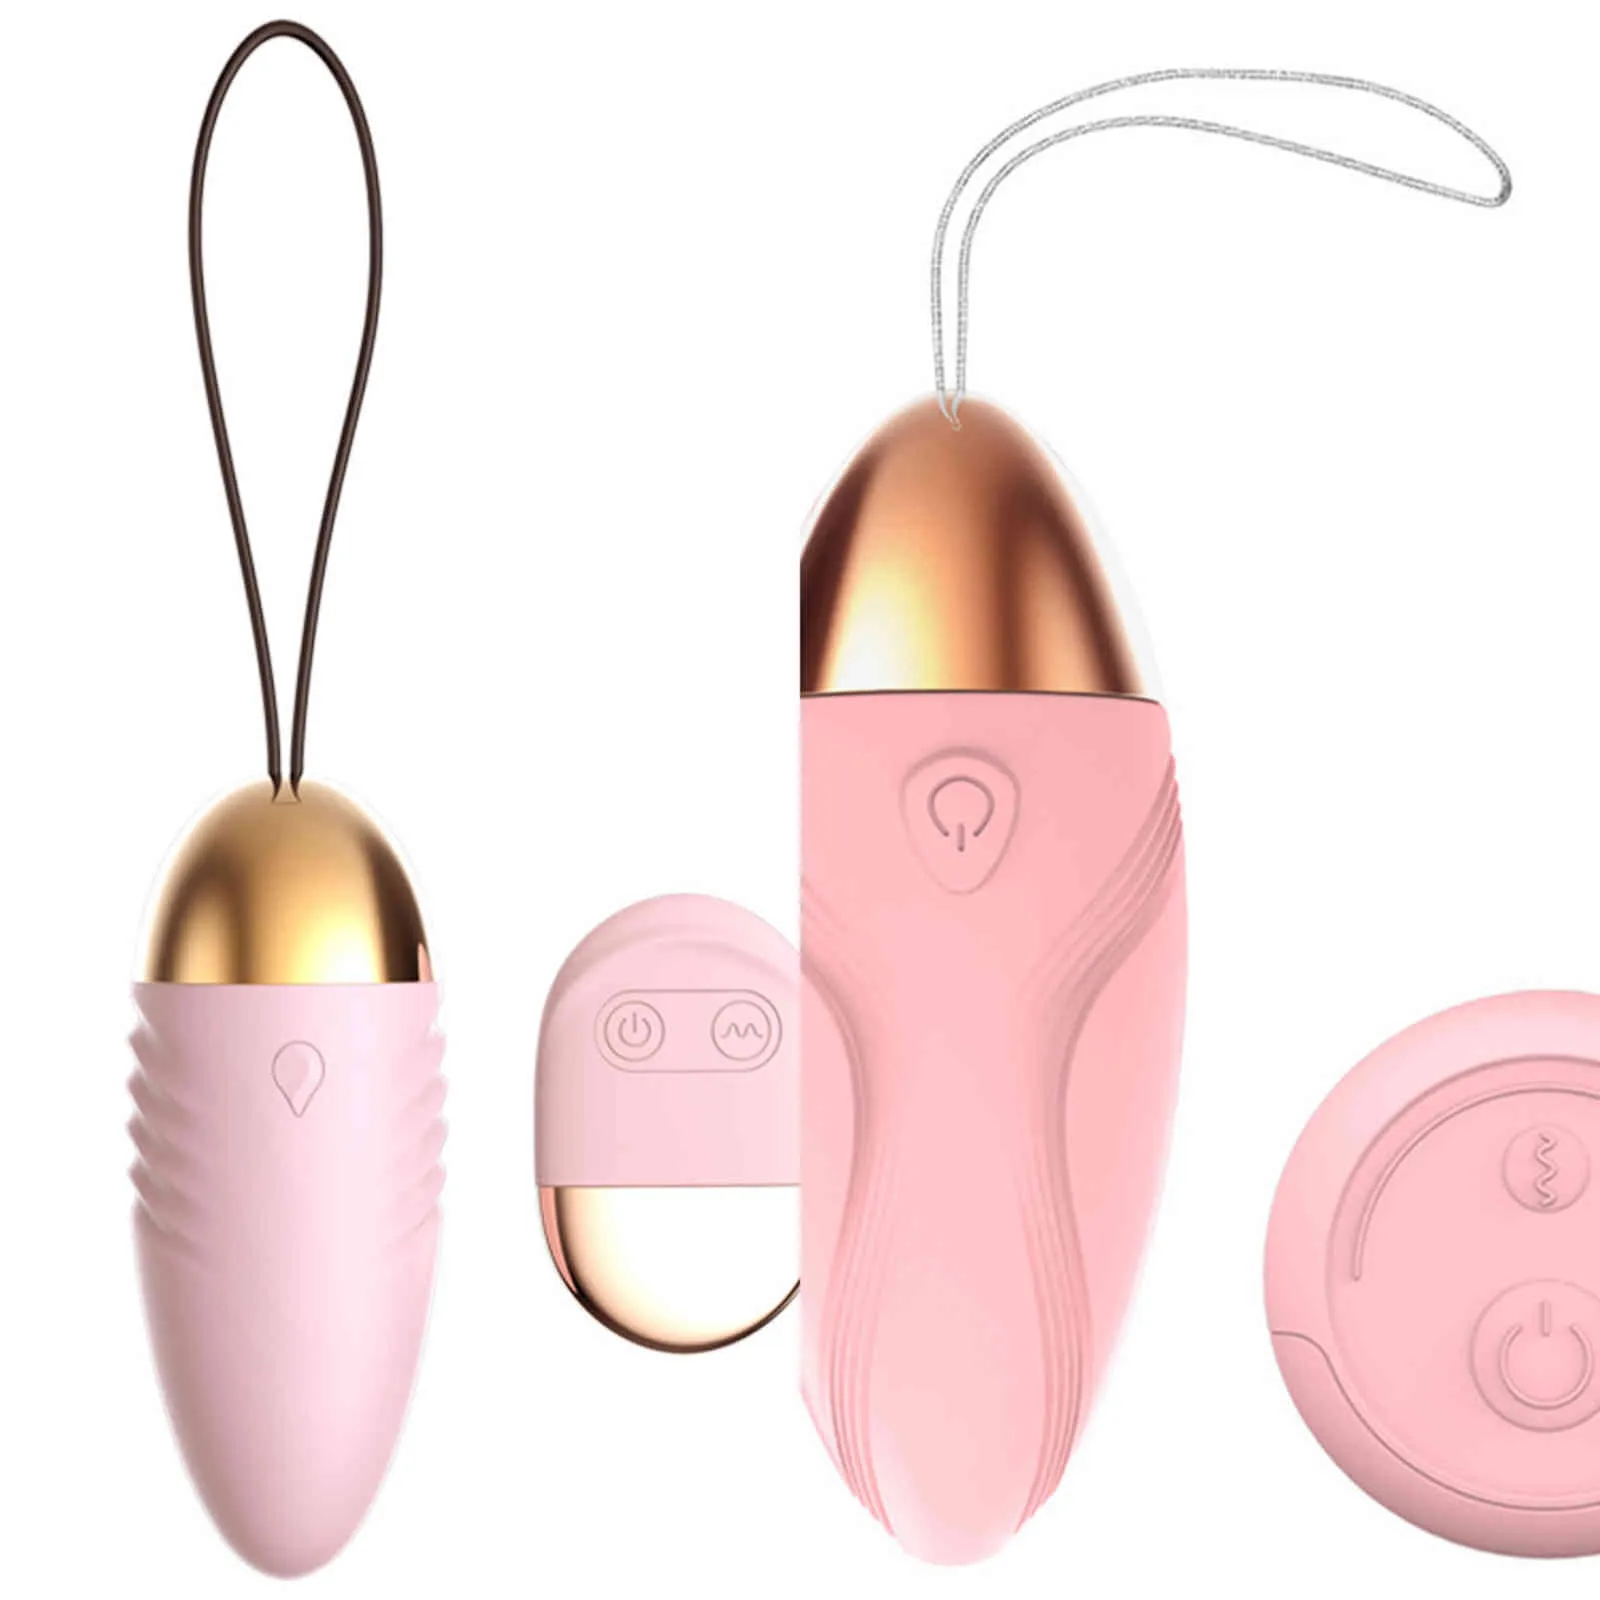 NXY Eggs Bola de Vagina con Control remoto para 10 velocidades giocattolo del sesso per le donne giocattoli uovo vibrante juguetes uales 1124